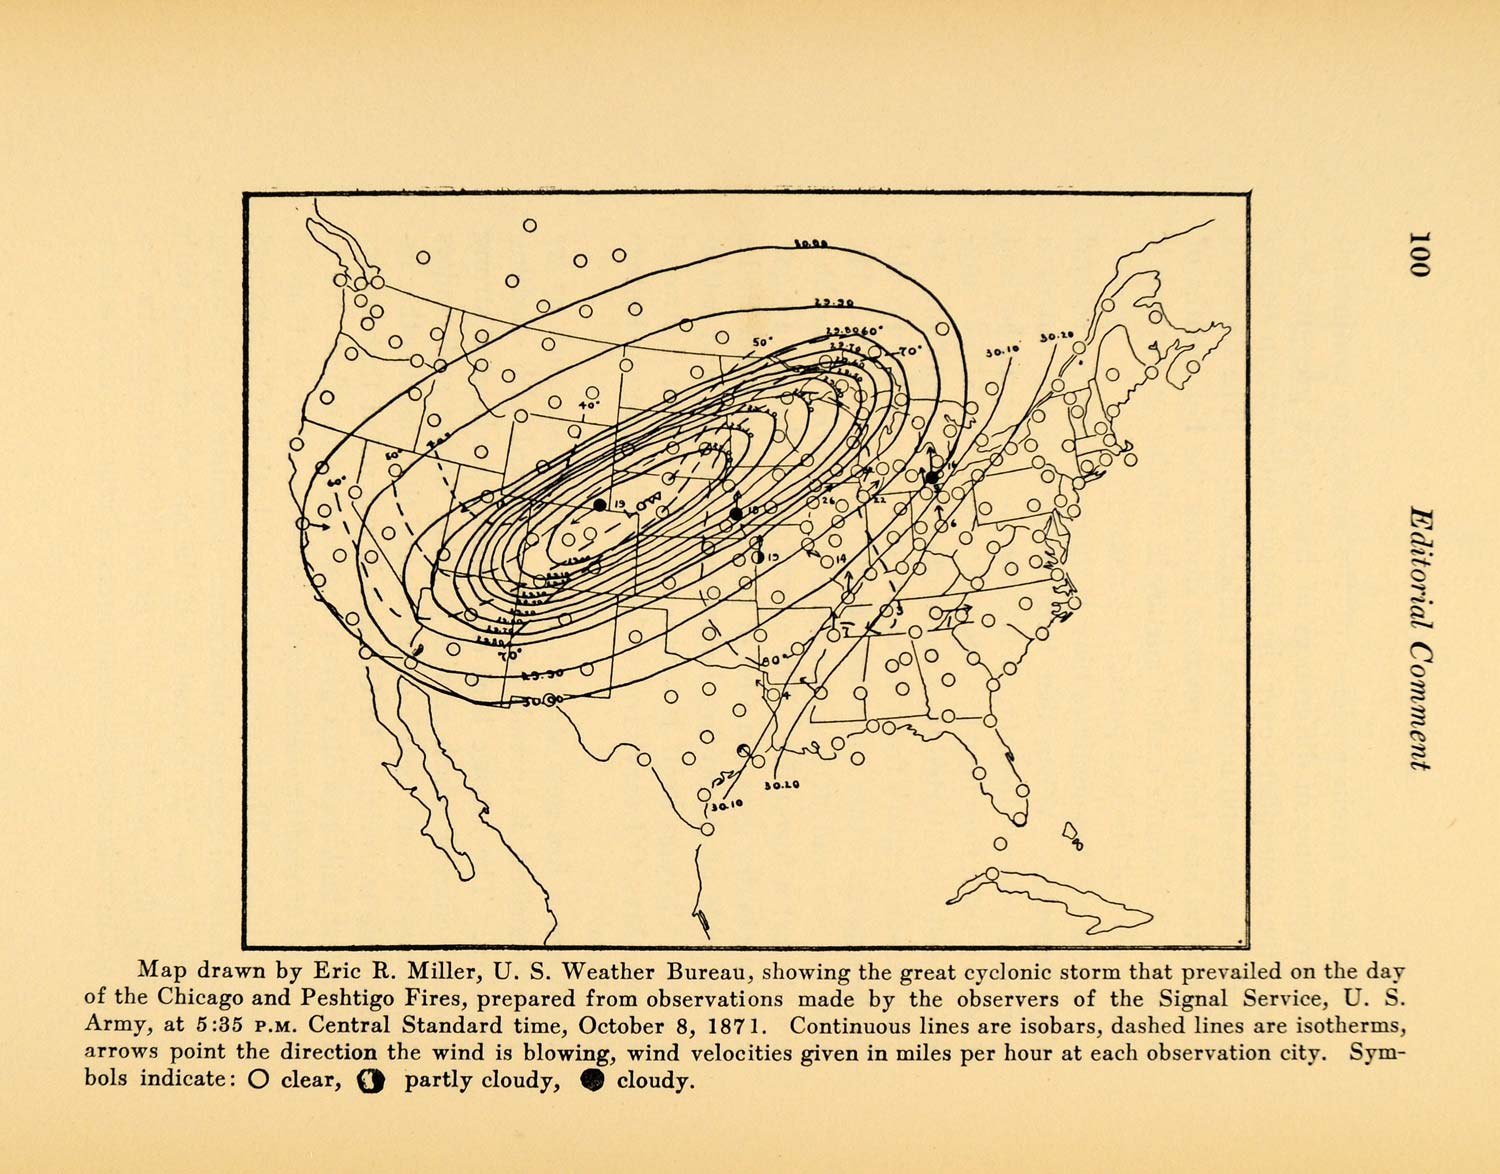 1927 Print US Weather Bureau Cyclonic Storm Map 1871 - ORIGINAL HISTORIC WIS1